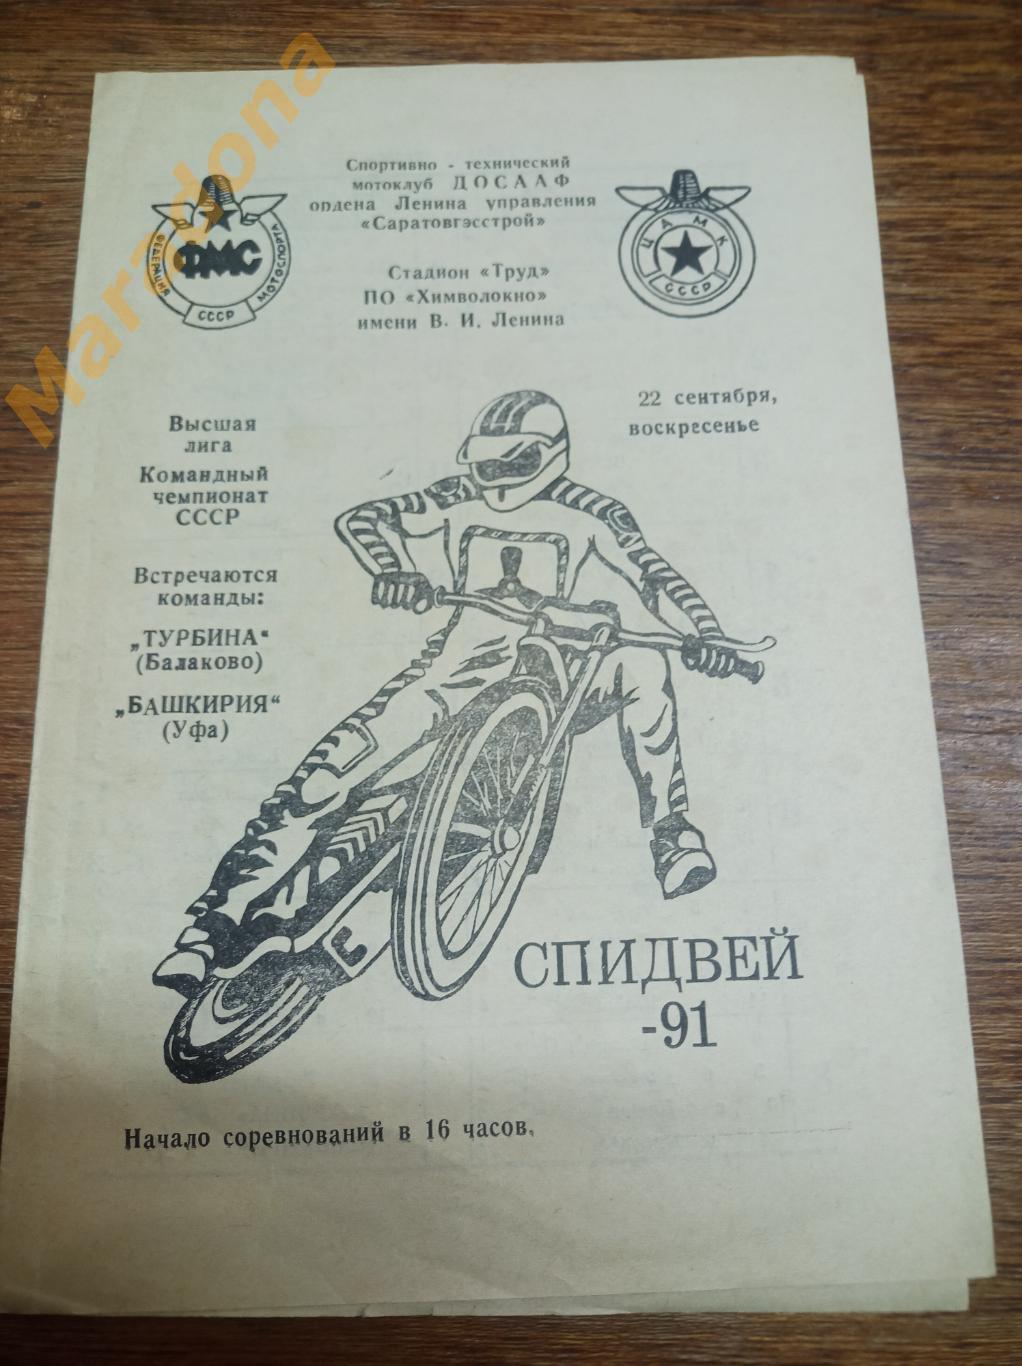 Спидвей Турбина Балаково - Башкирия Уфа 1991